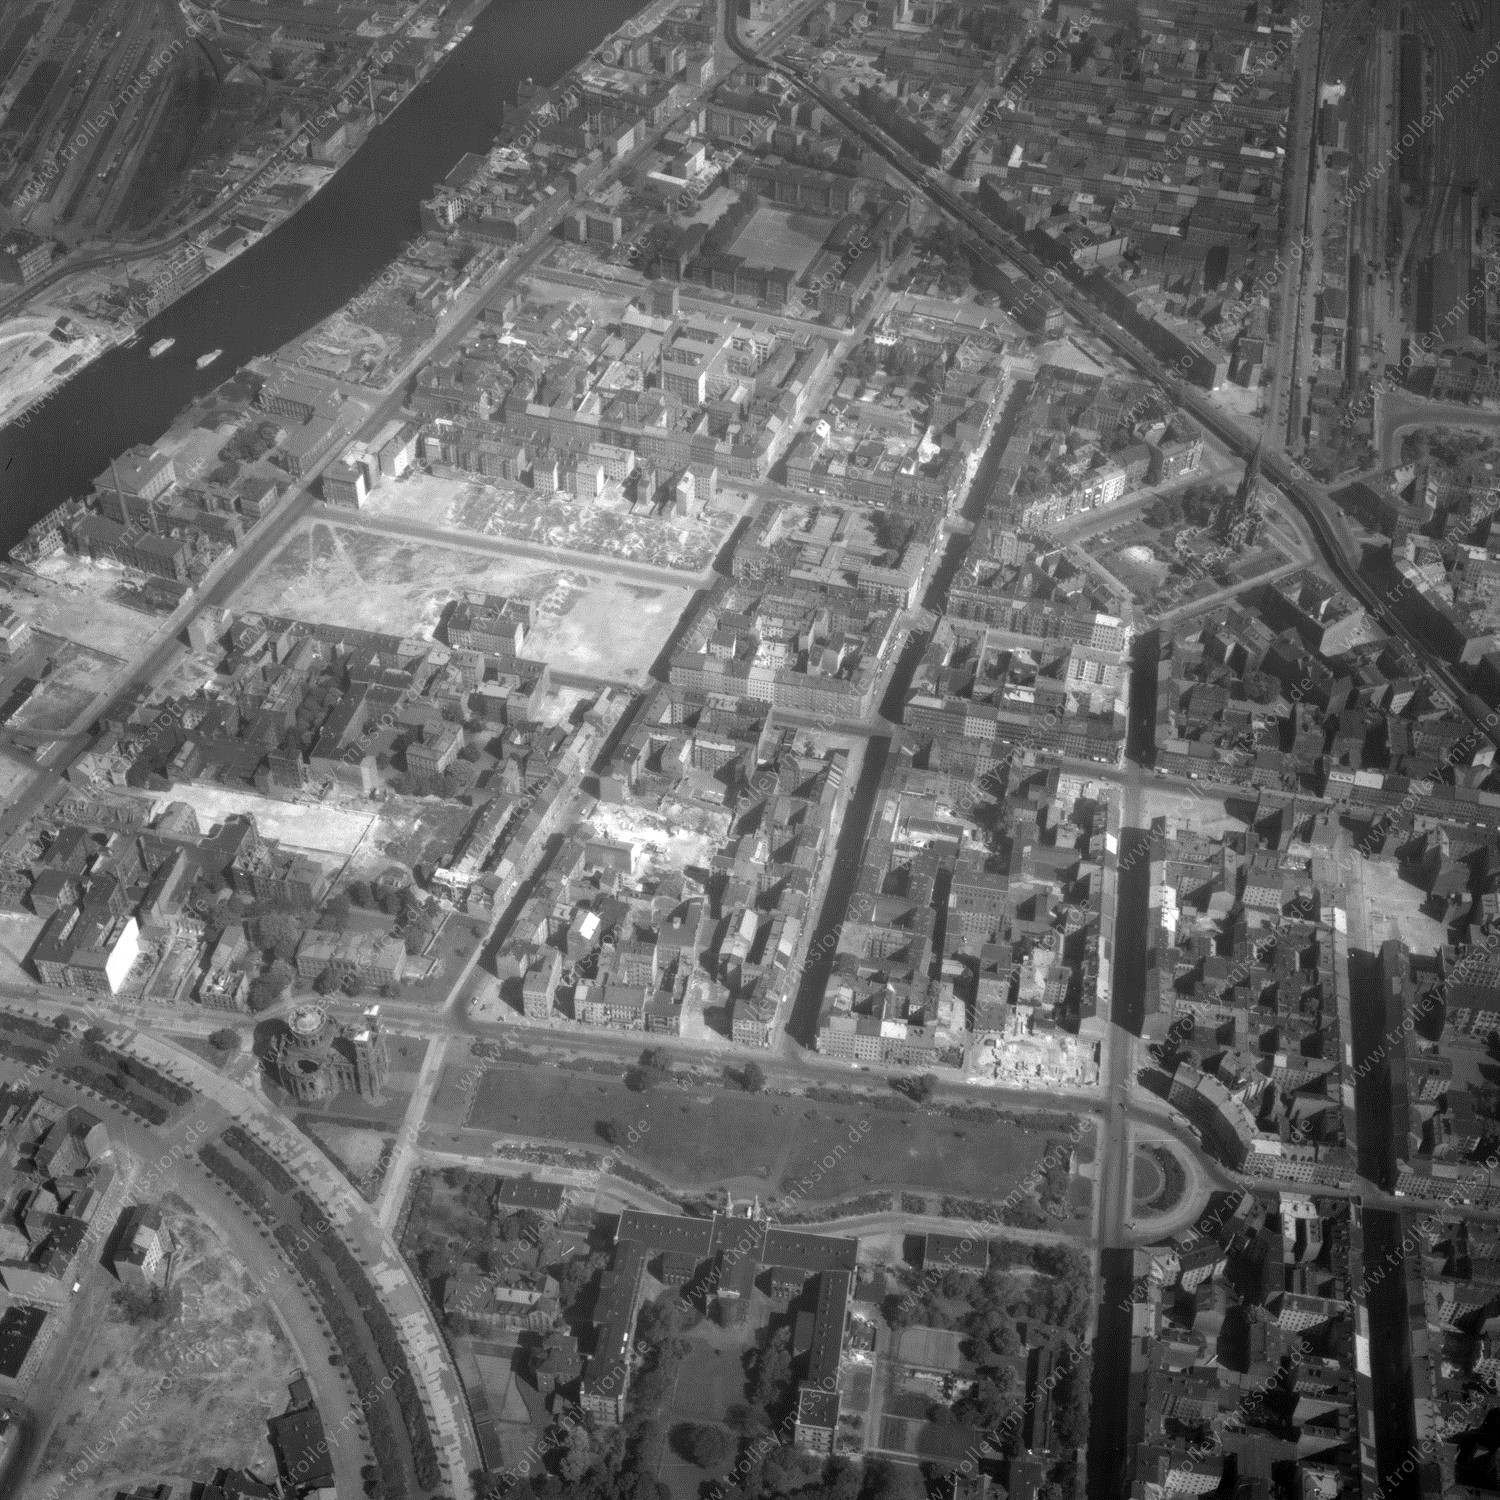 Alte Fotos und Luftbilder von Berlin - Luftbildaufnahme Nr. 09 - Historische Luftaufnahmen von West-Berlin aus dem Jahr 1954 - Flugstrecke Mike